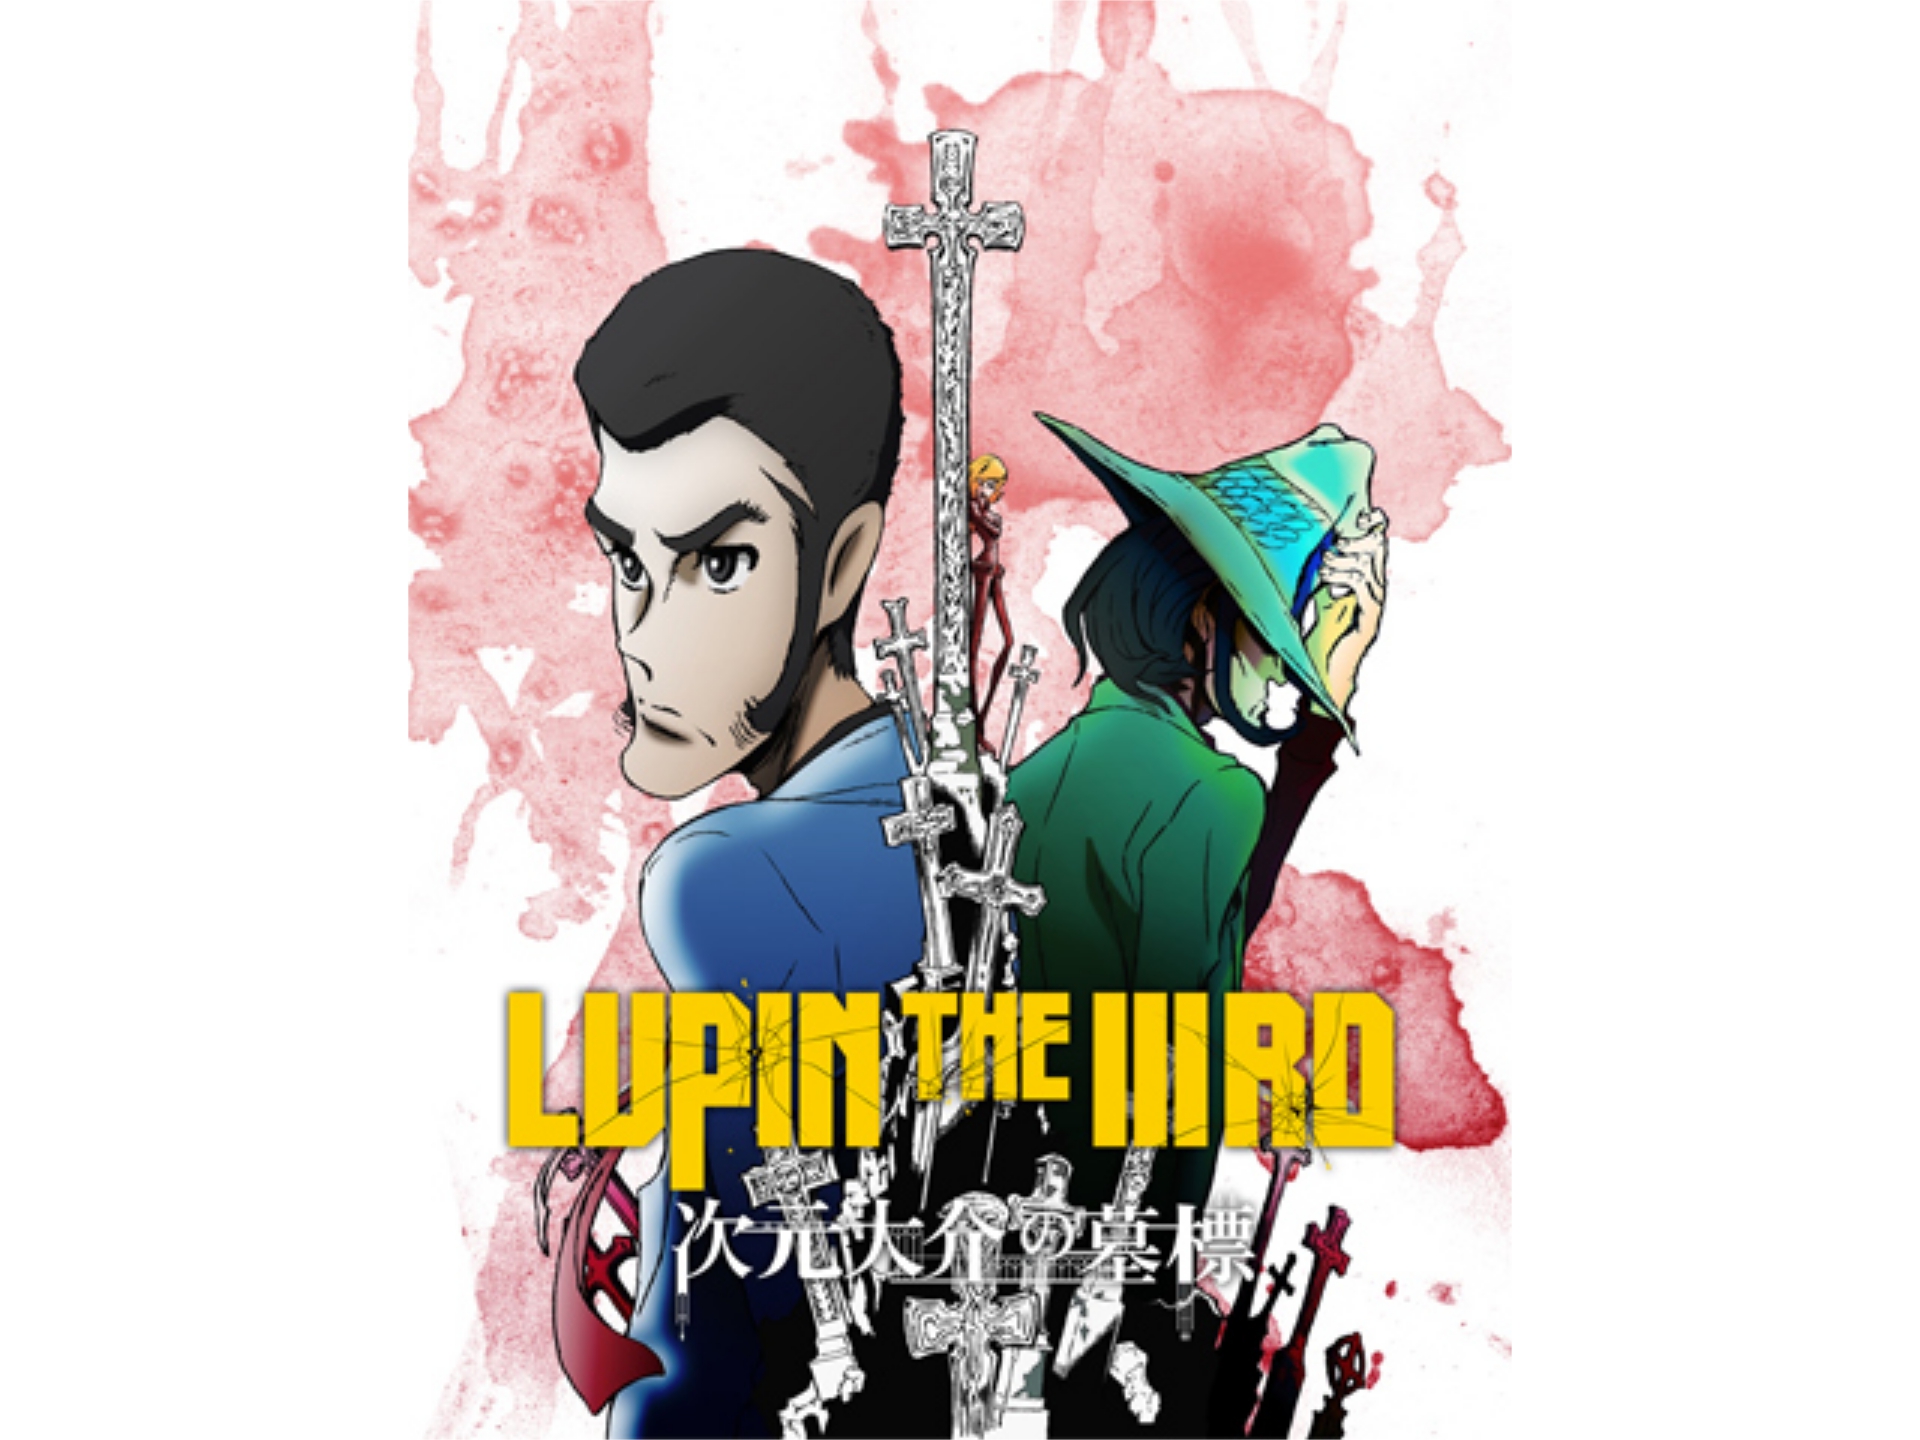 アニメ Lupin The Iiird 次元大介の墓標 予告編 フル動画 初月無料 動画配信サービスのビデオマーケット